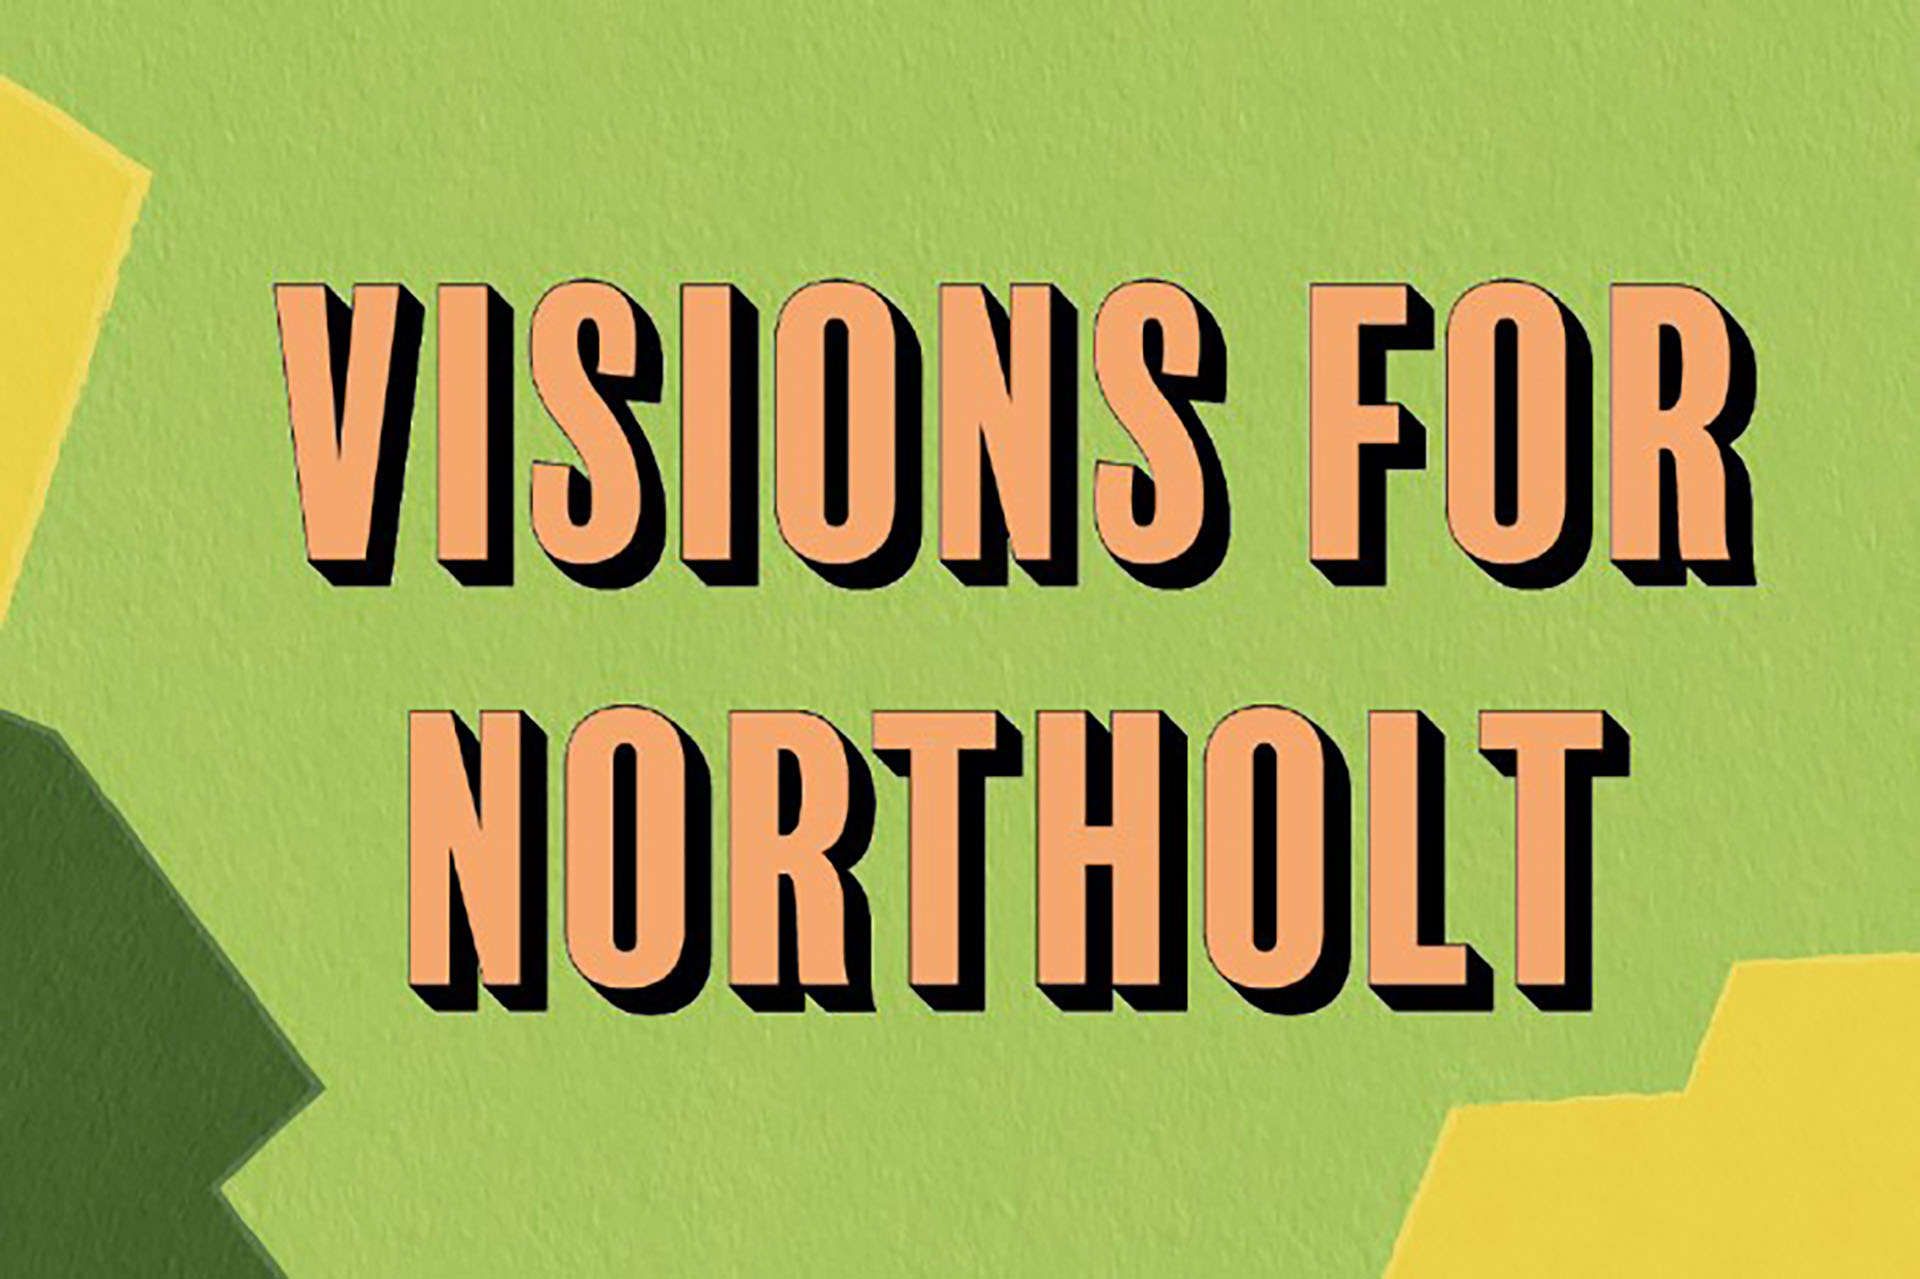 Visions for Northolt